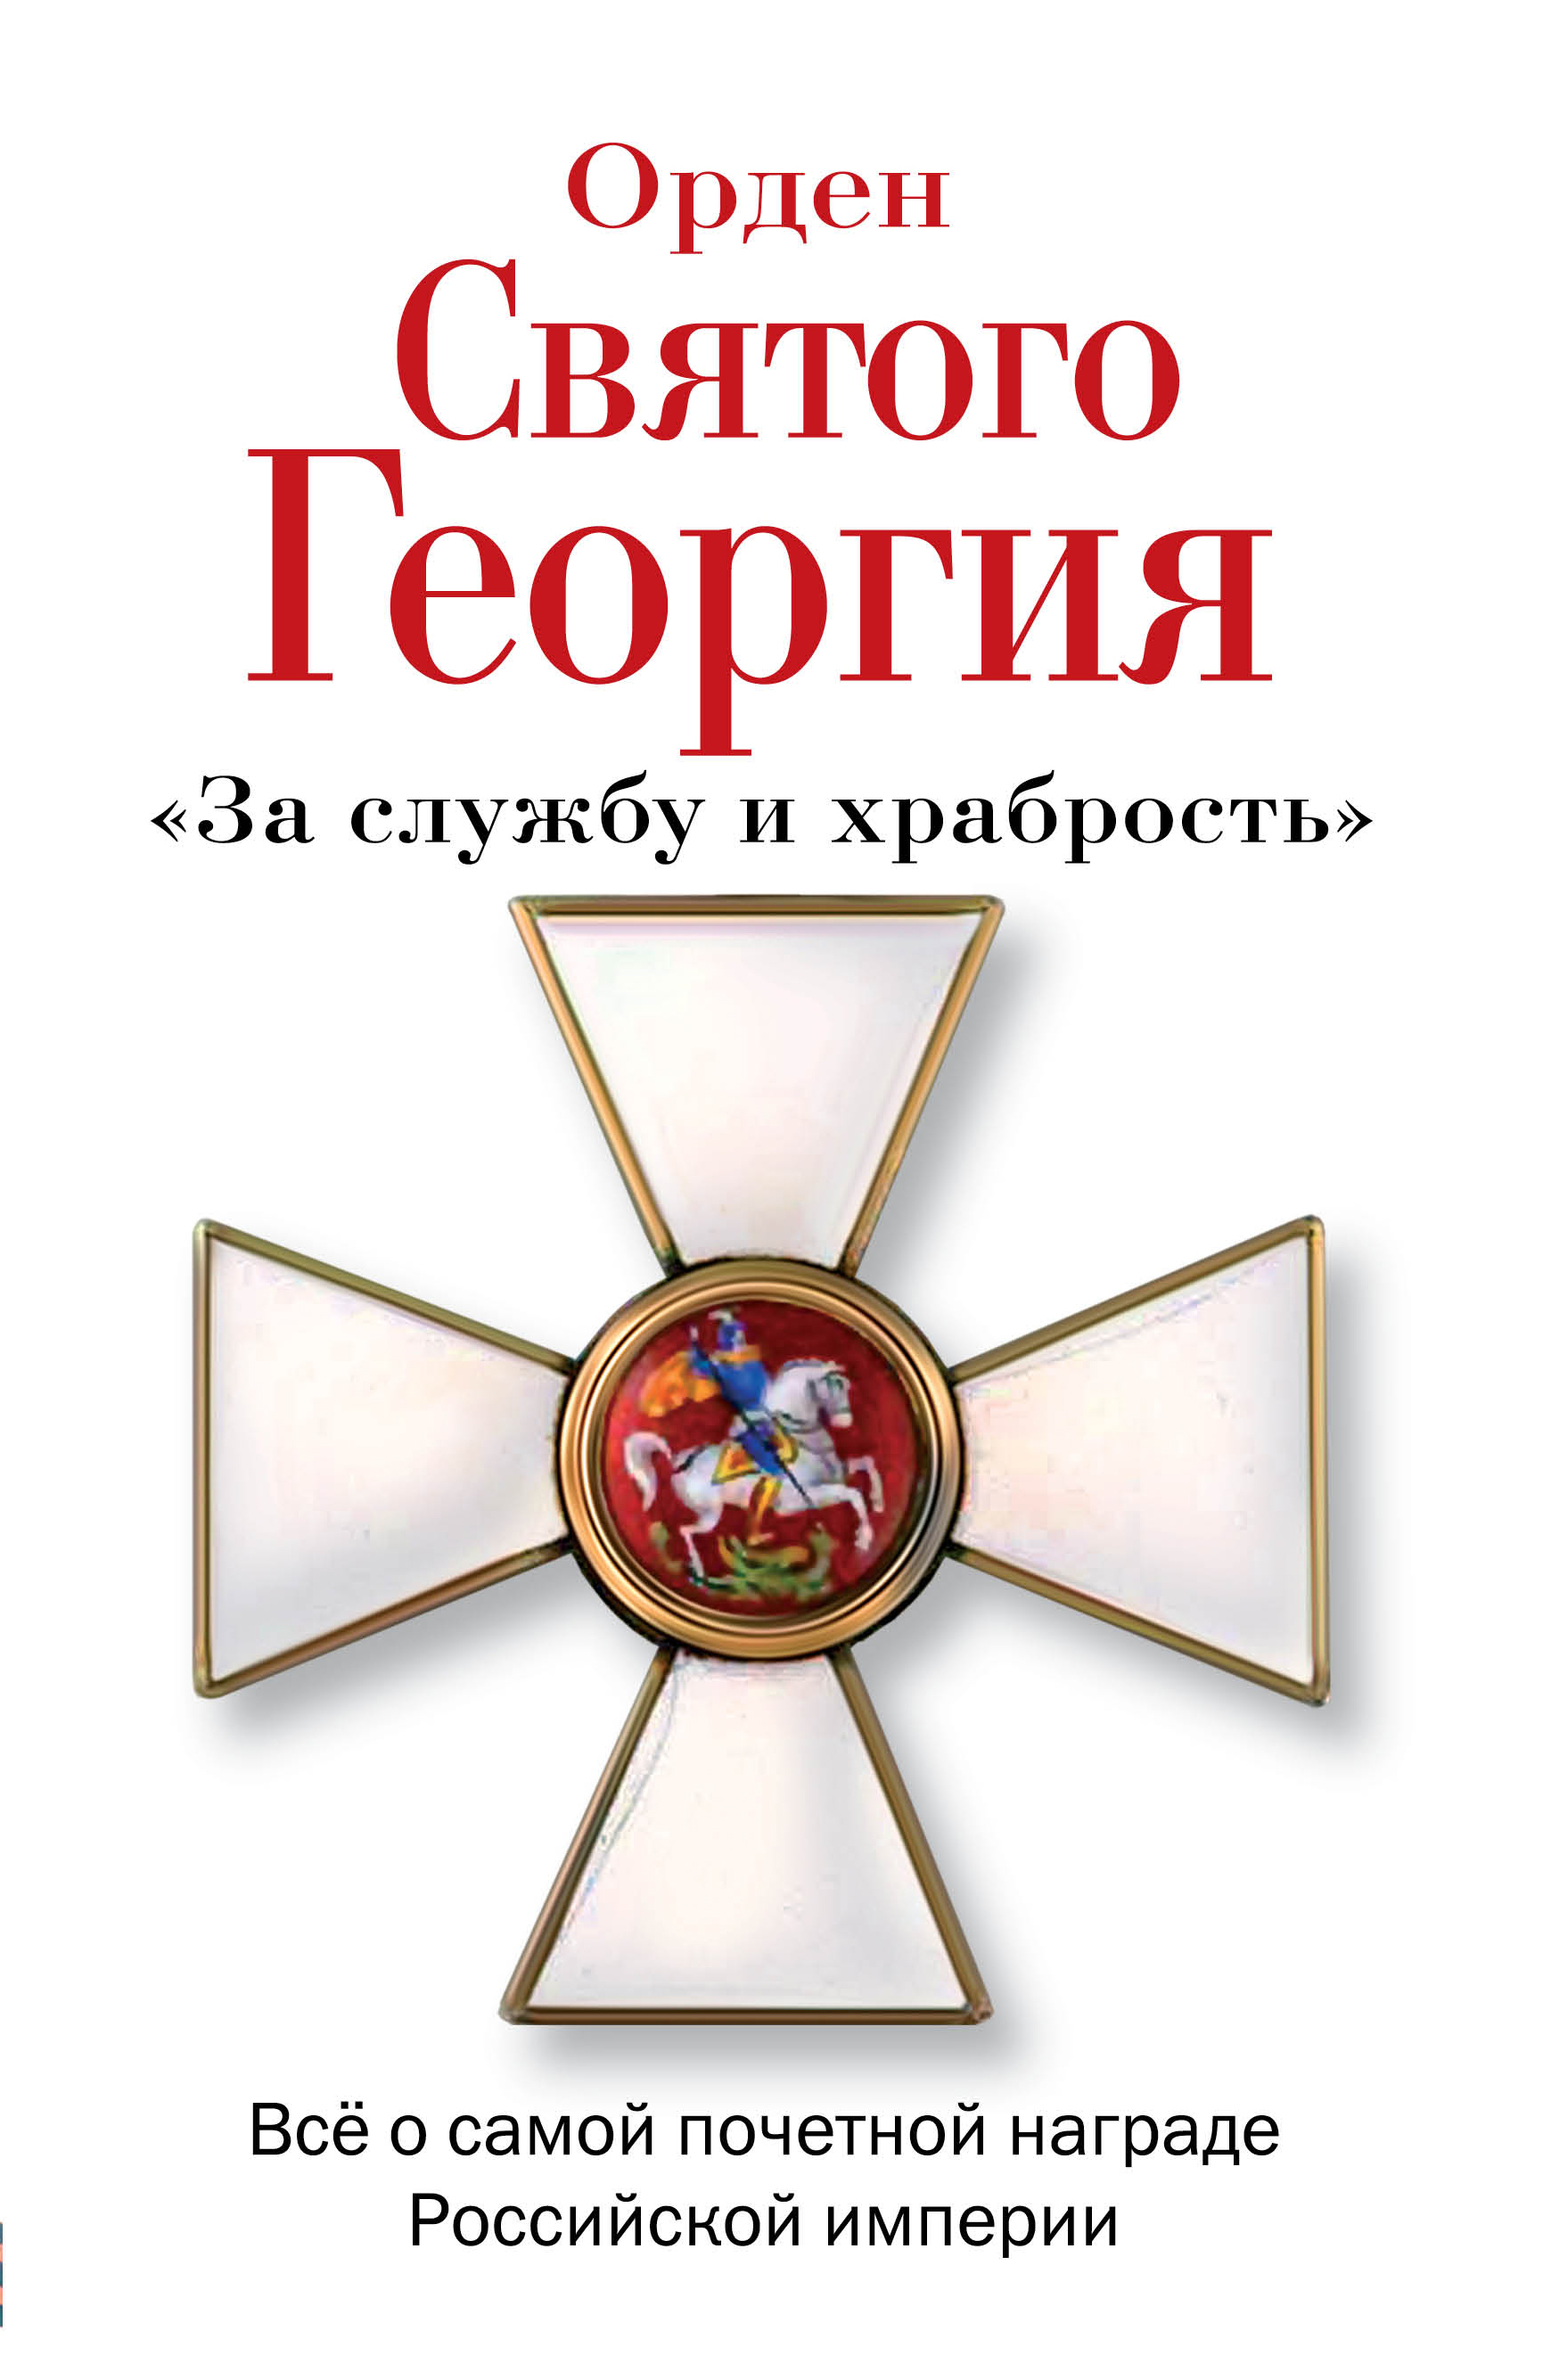 Орден Святого Георгия. Все о самой почетной награде Российской Империи случается внимательно рассматривая